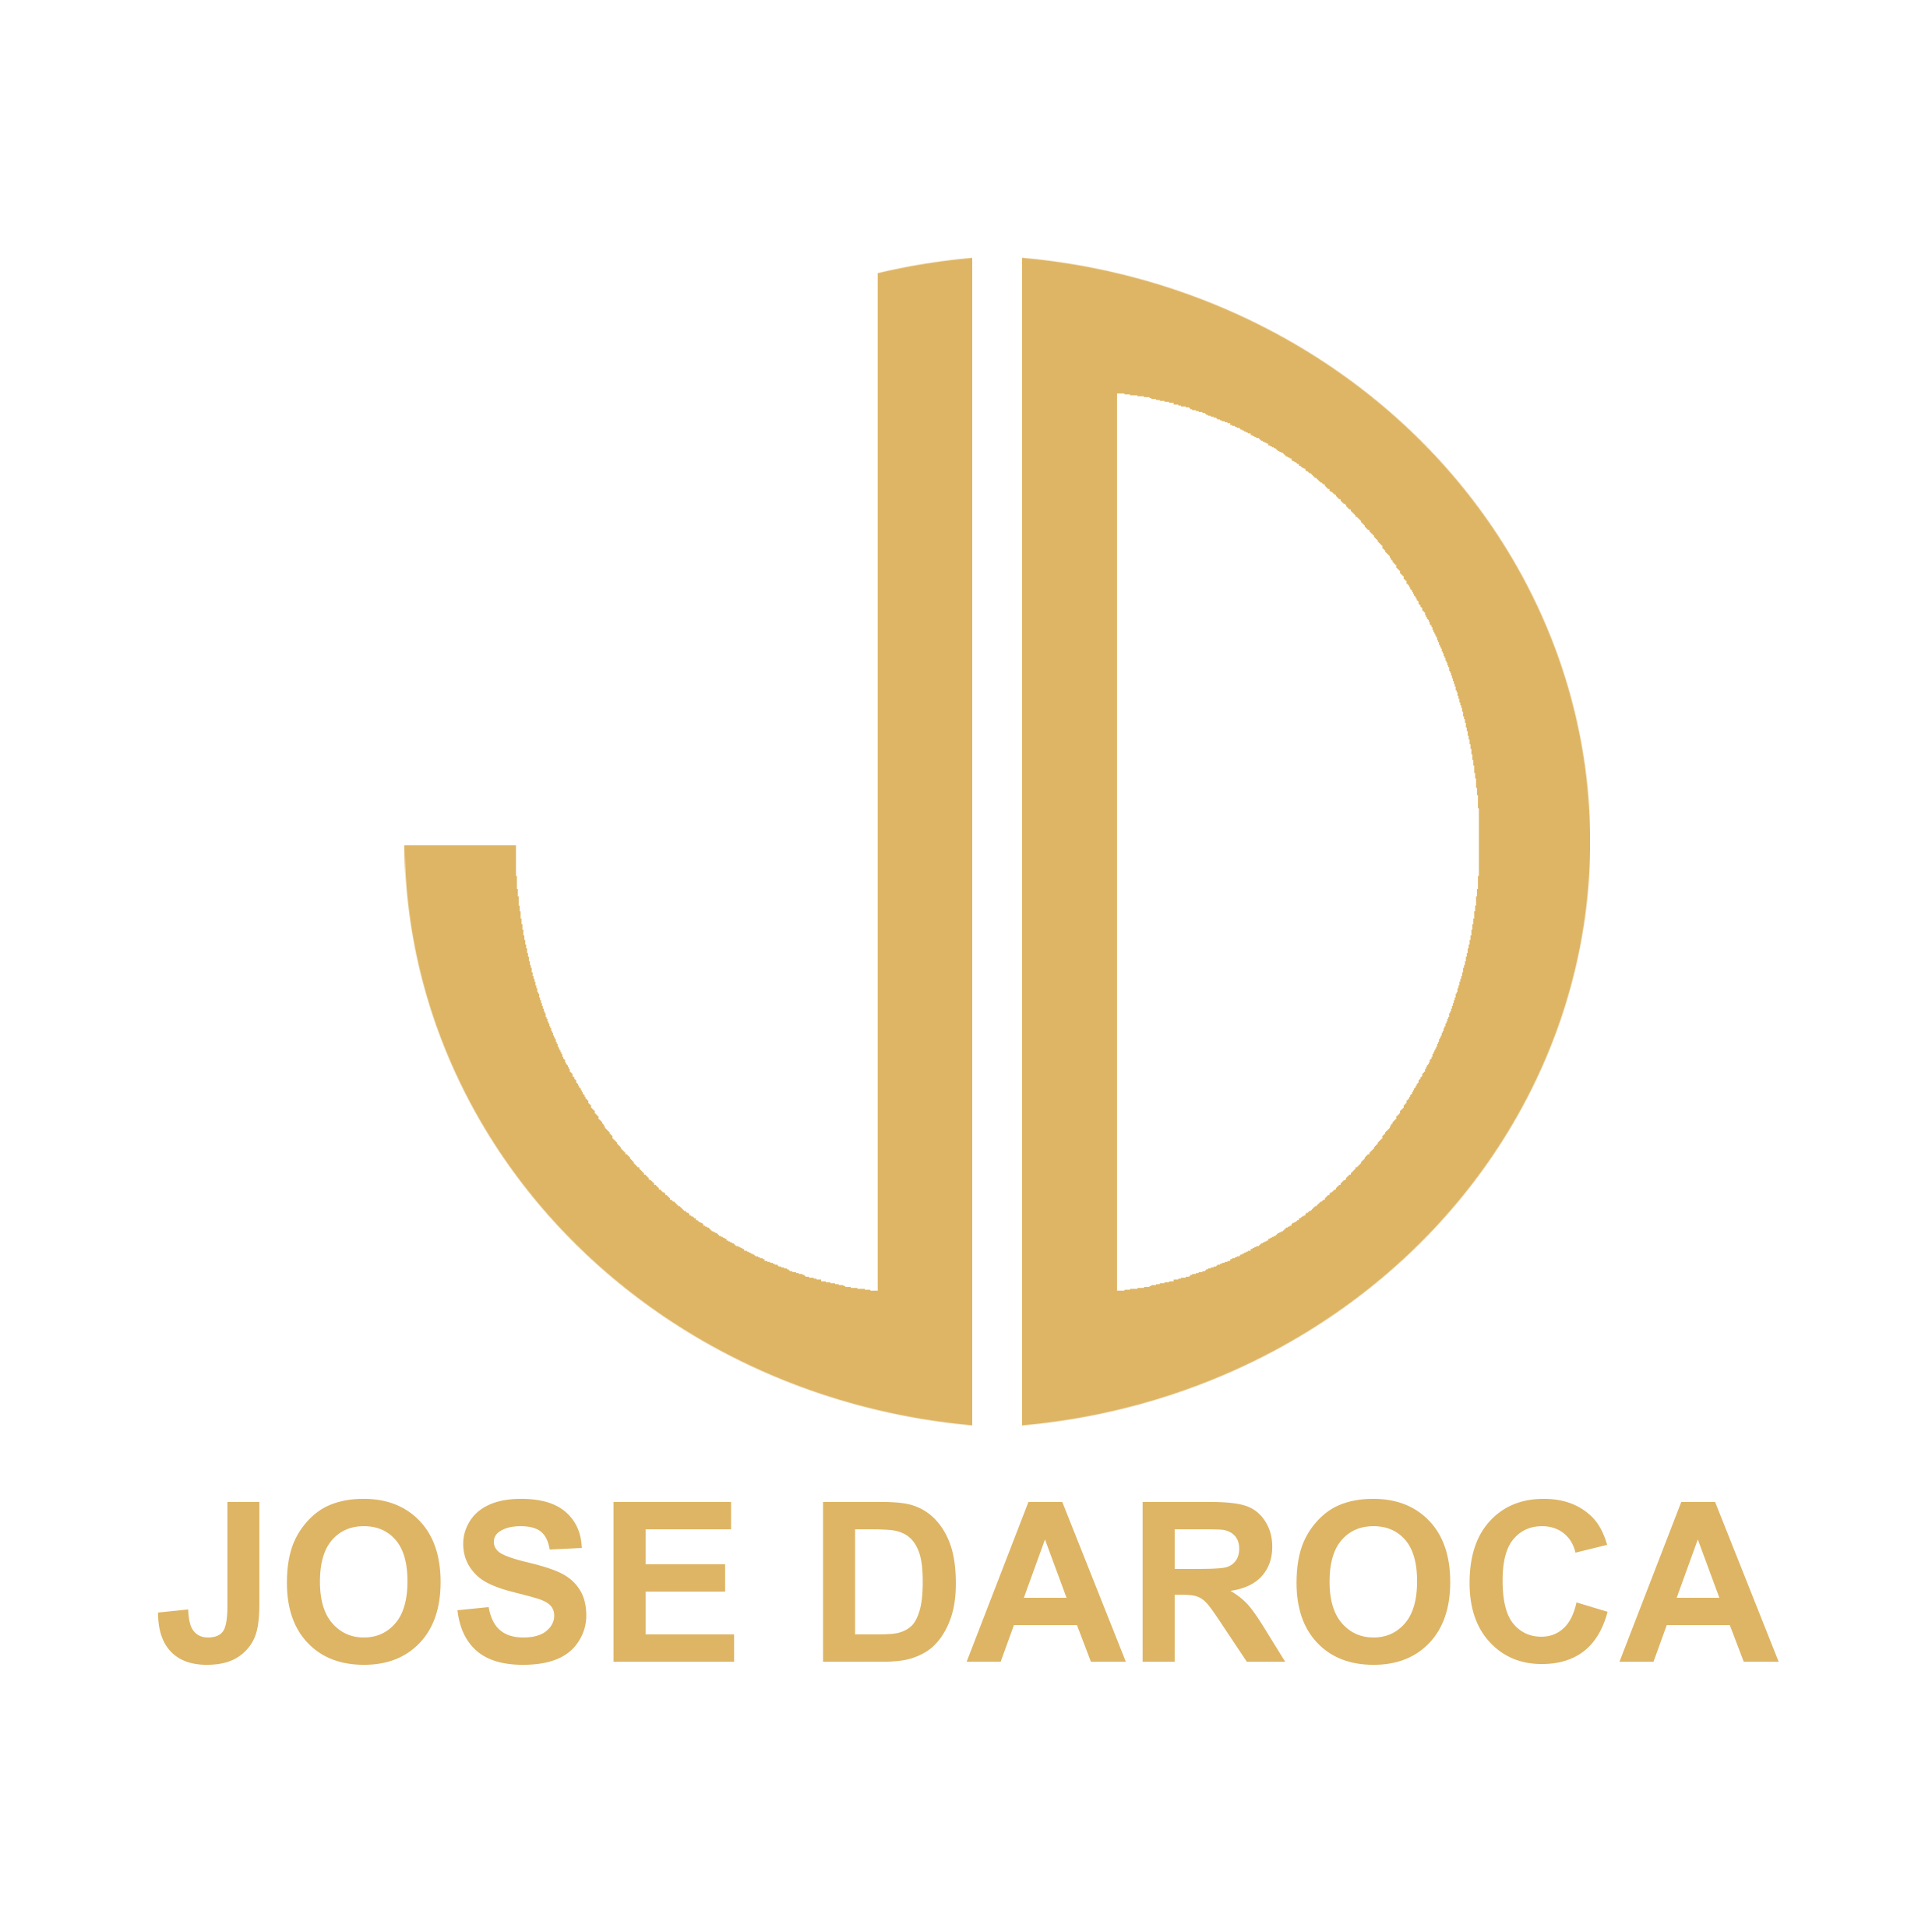 Jose Daroca